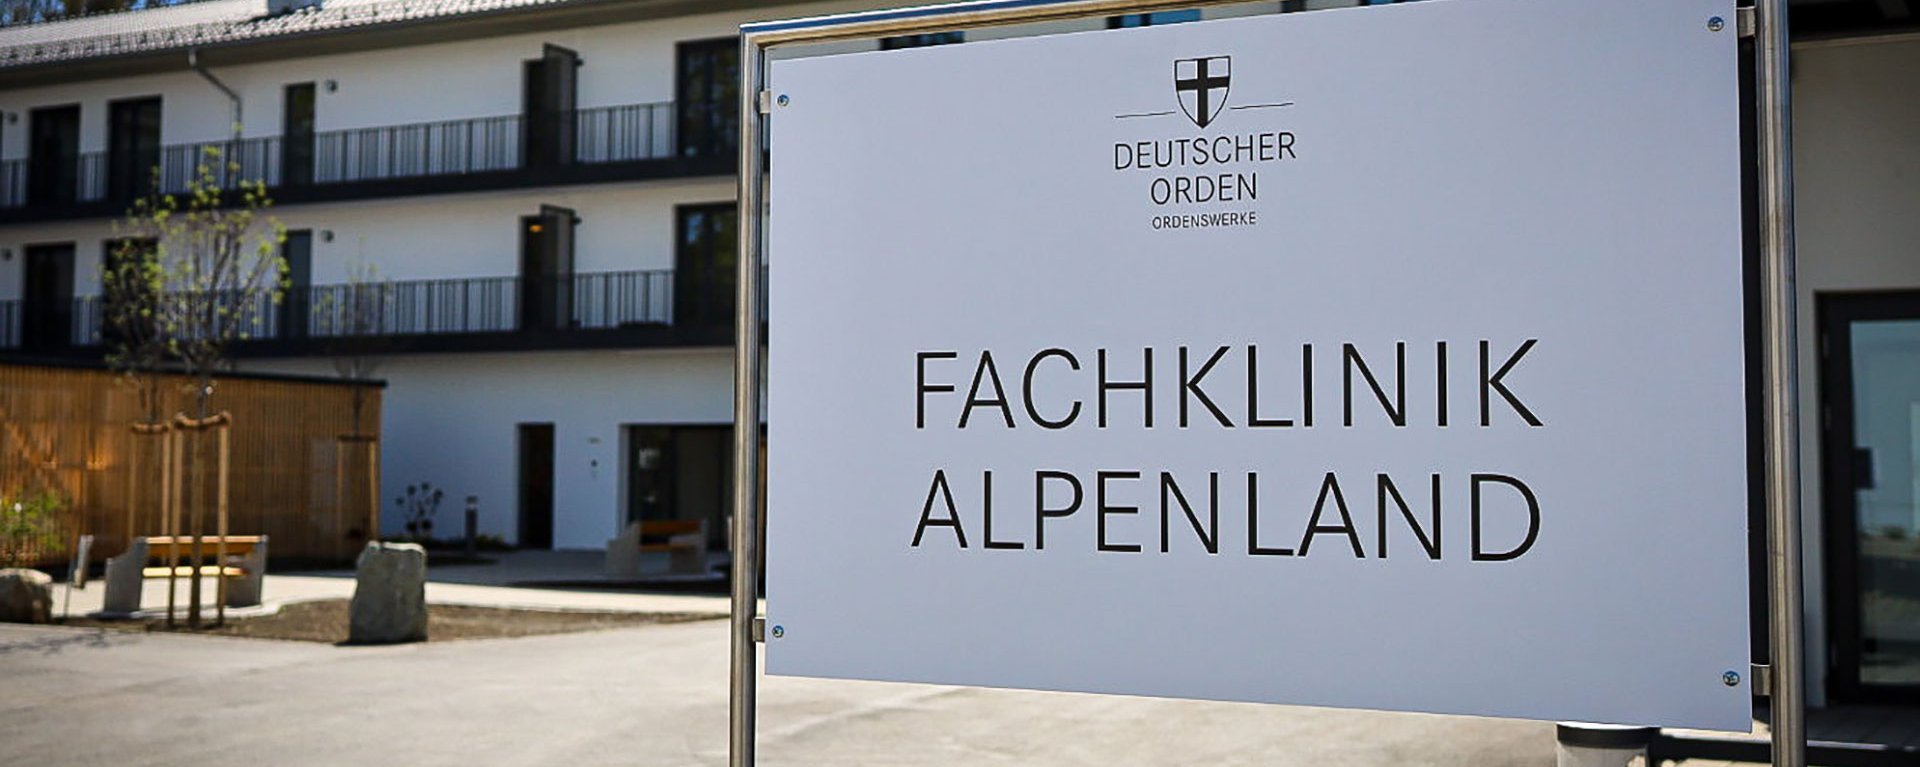 Aussenaufnahme der Einrichtung - Schild mit Aufschrift: "Deutscher Orden - FACHKLINIK ALPENLAND"